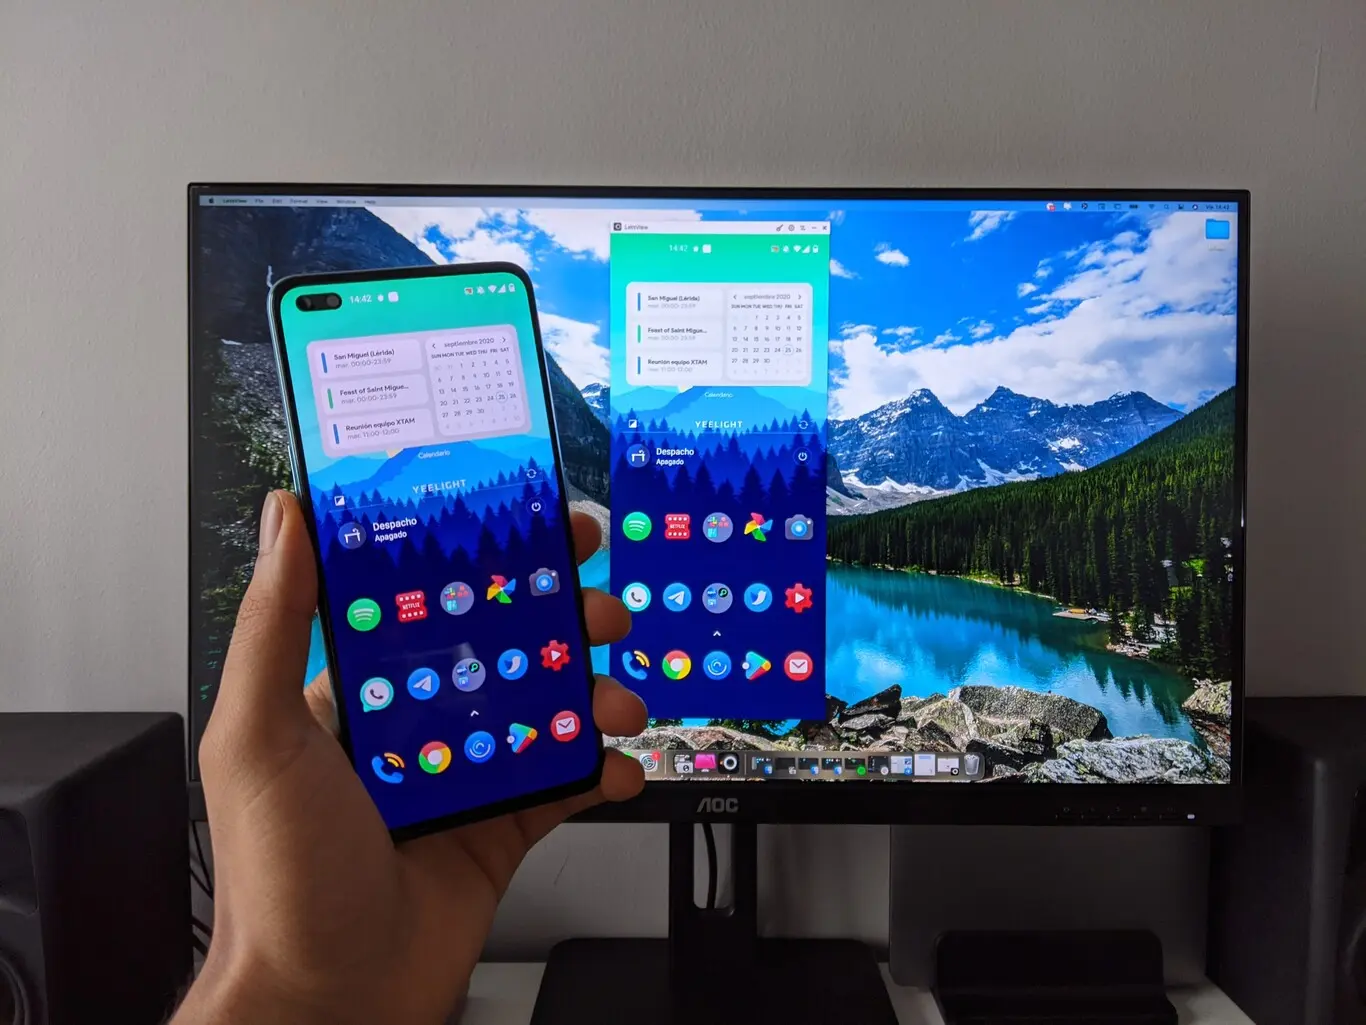 duplicar pantalla samsung en pc - Cómo hacer que mi Samsung se conecte a mi PC